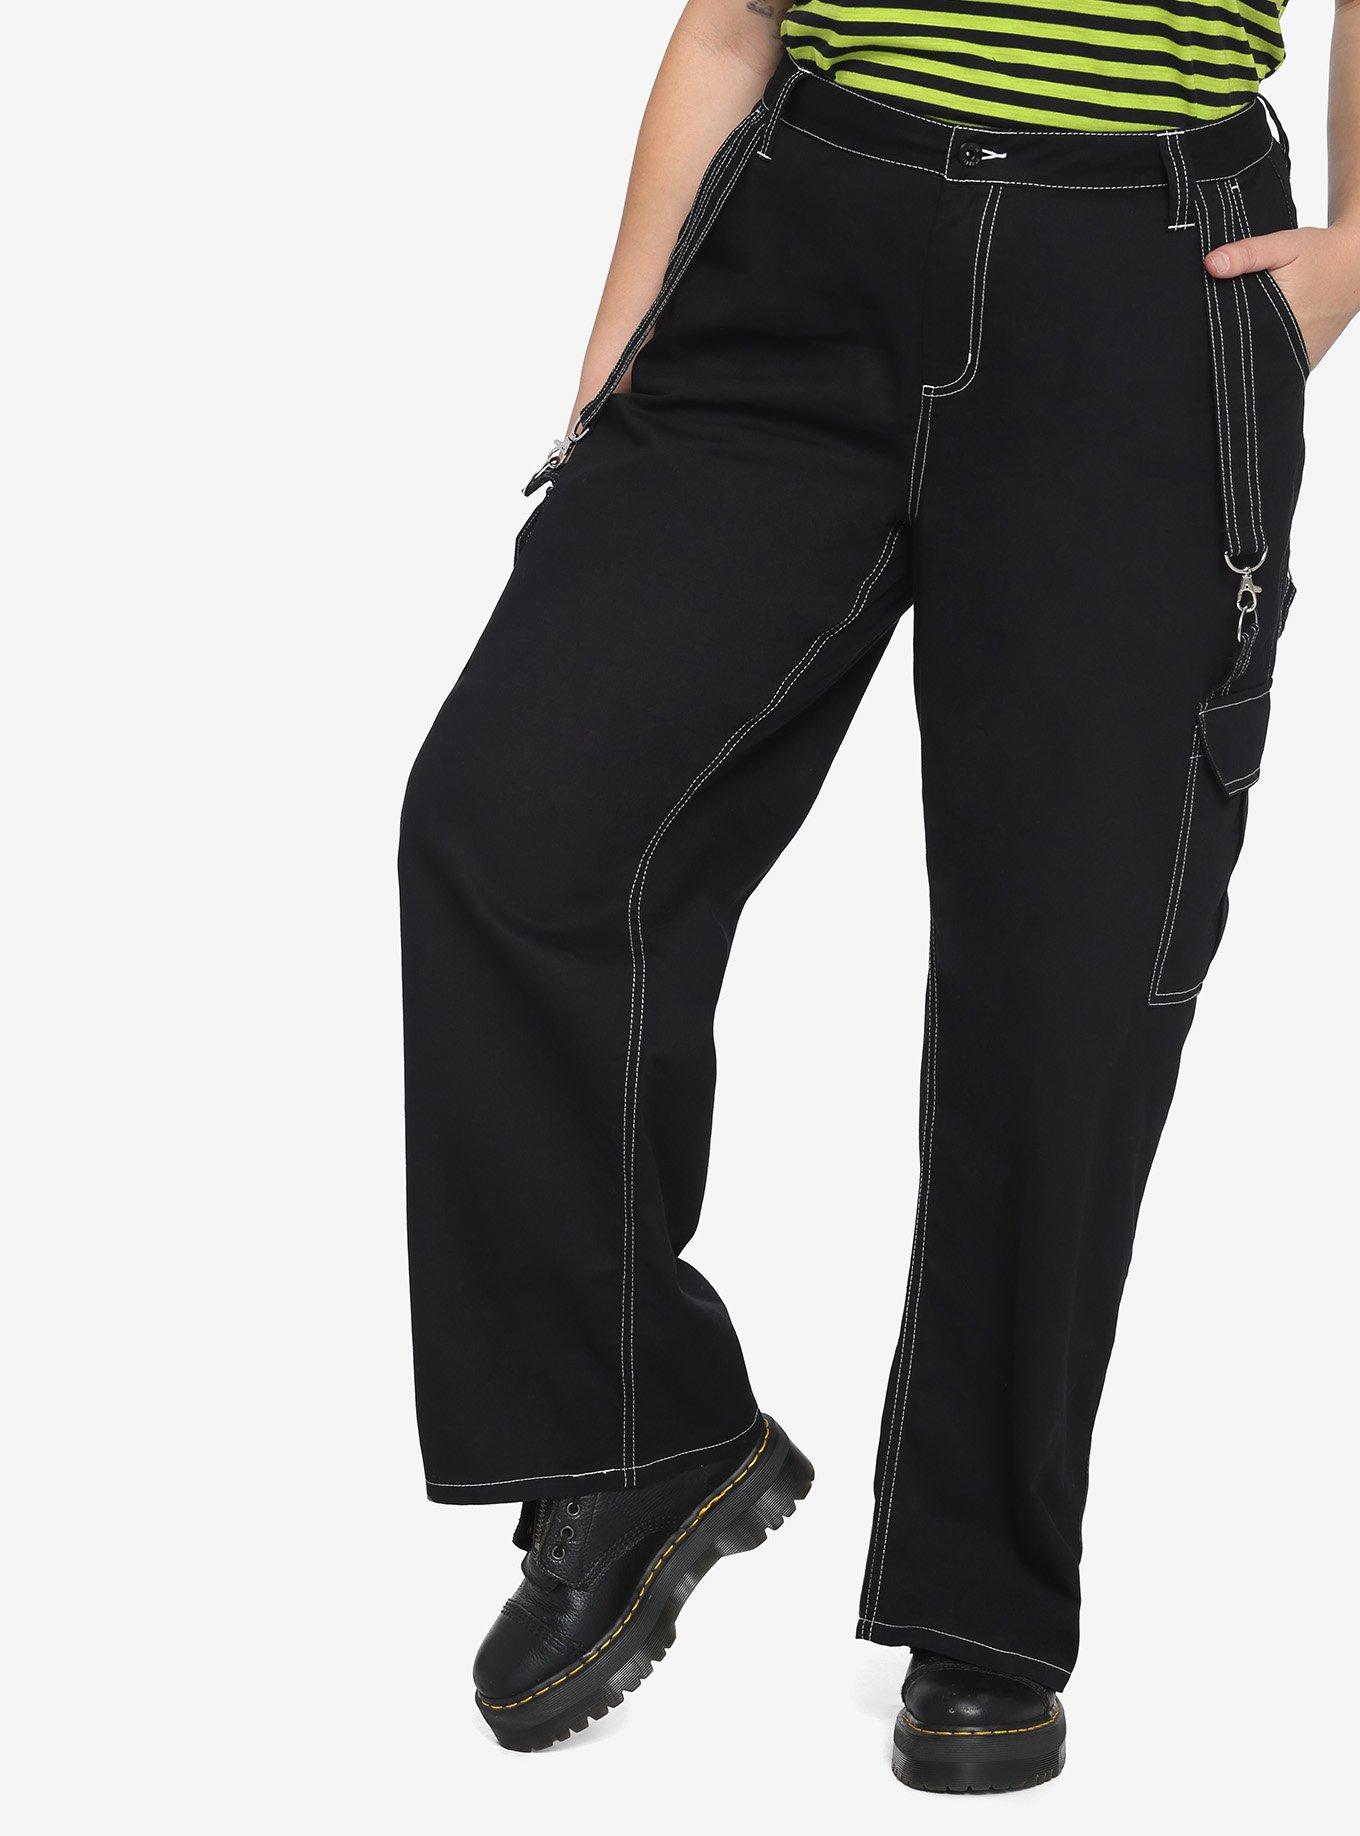 HT Denim Black & White Stitch Hi-Rise Carpenter Pants Plus Size, BLACK, alternate